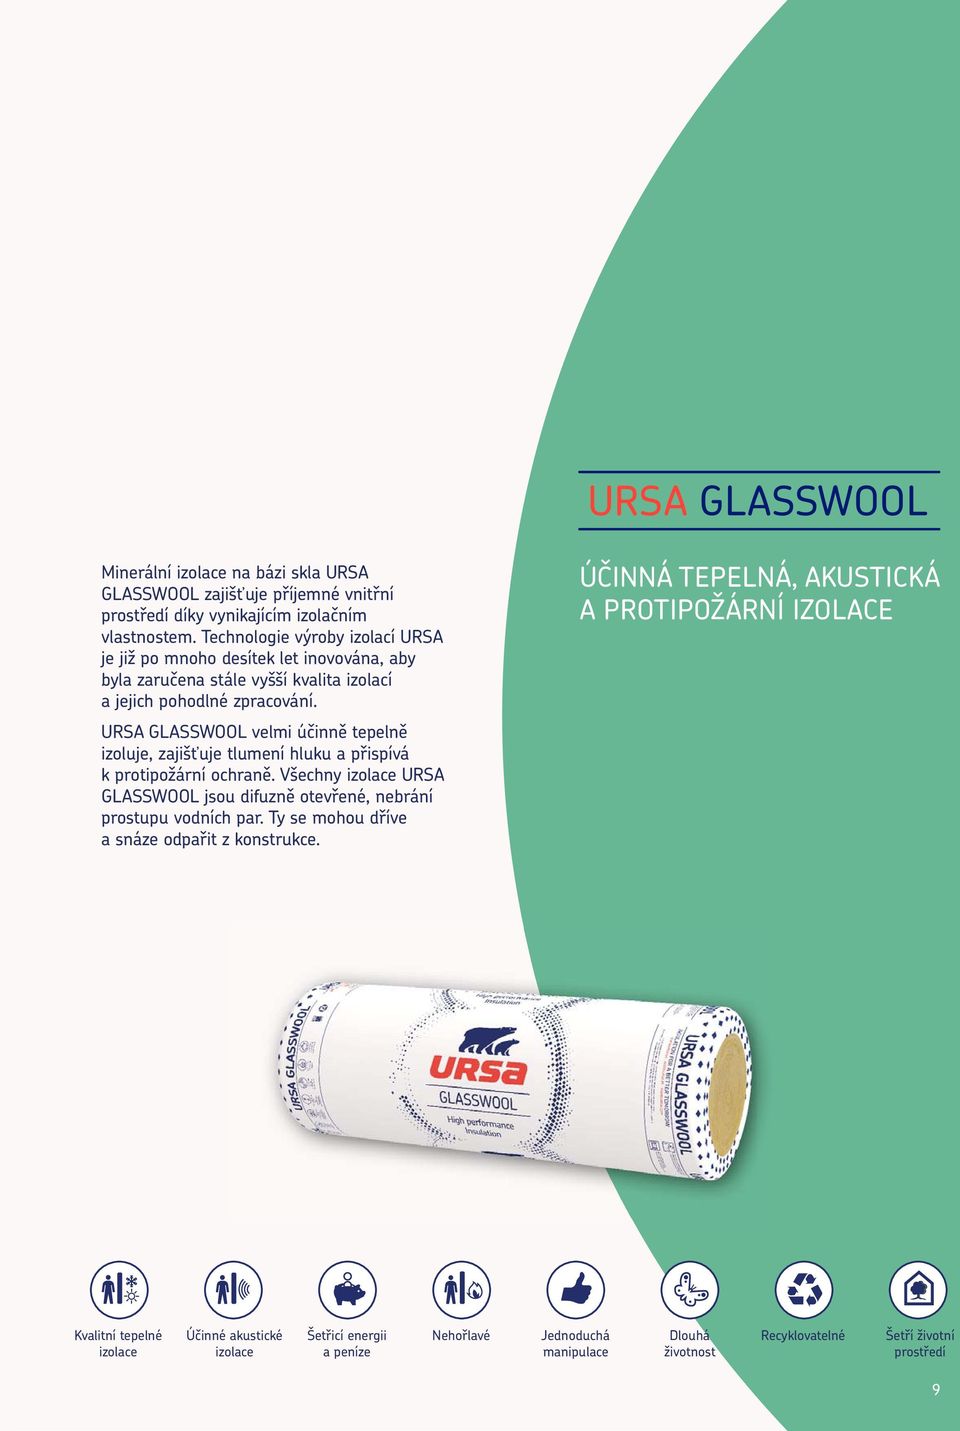 URSA GLASSWOOL velmi účinně tepelně izoluje, zajišťuje tlumení hluku a přispívá k protipožární ochraně.